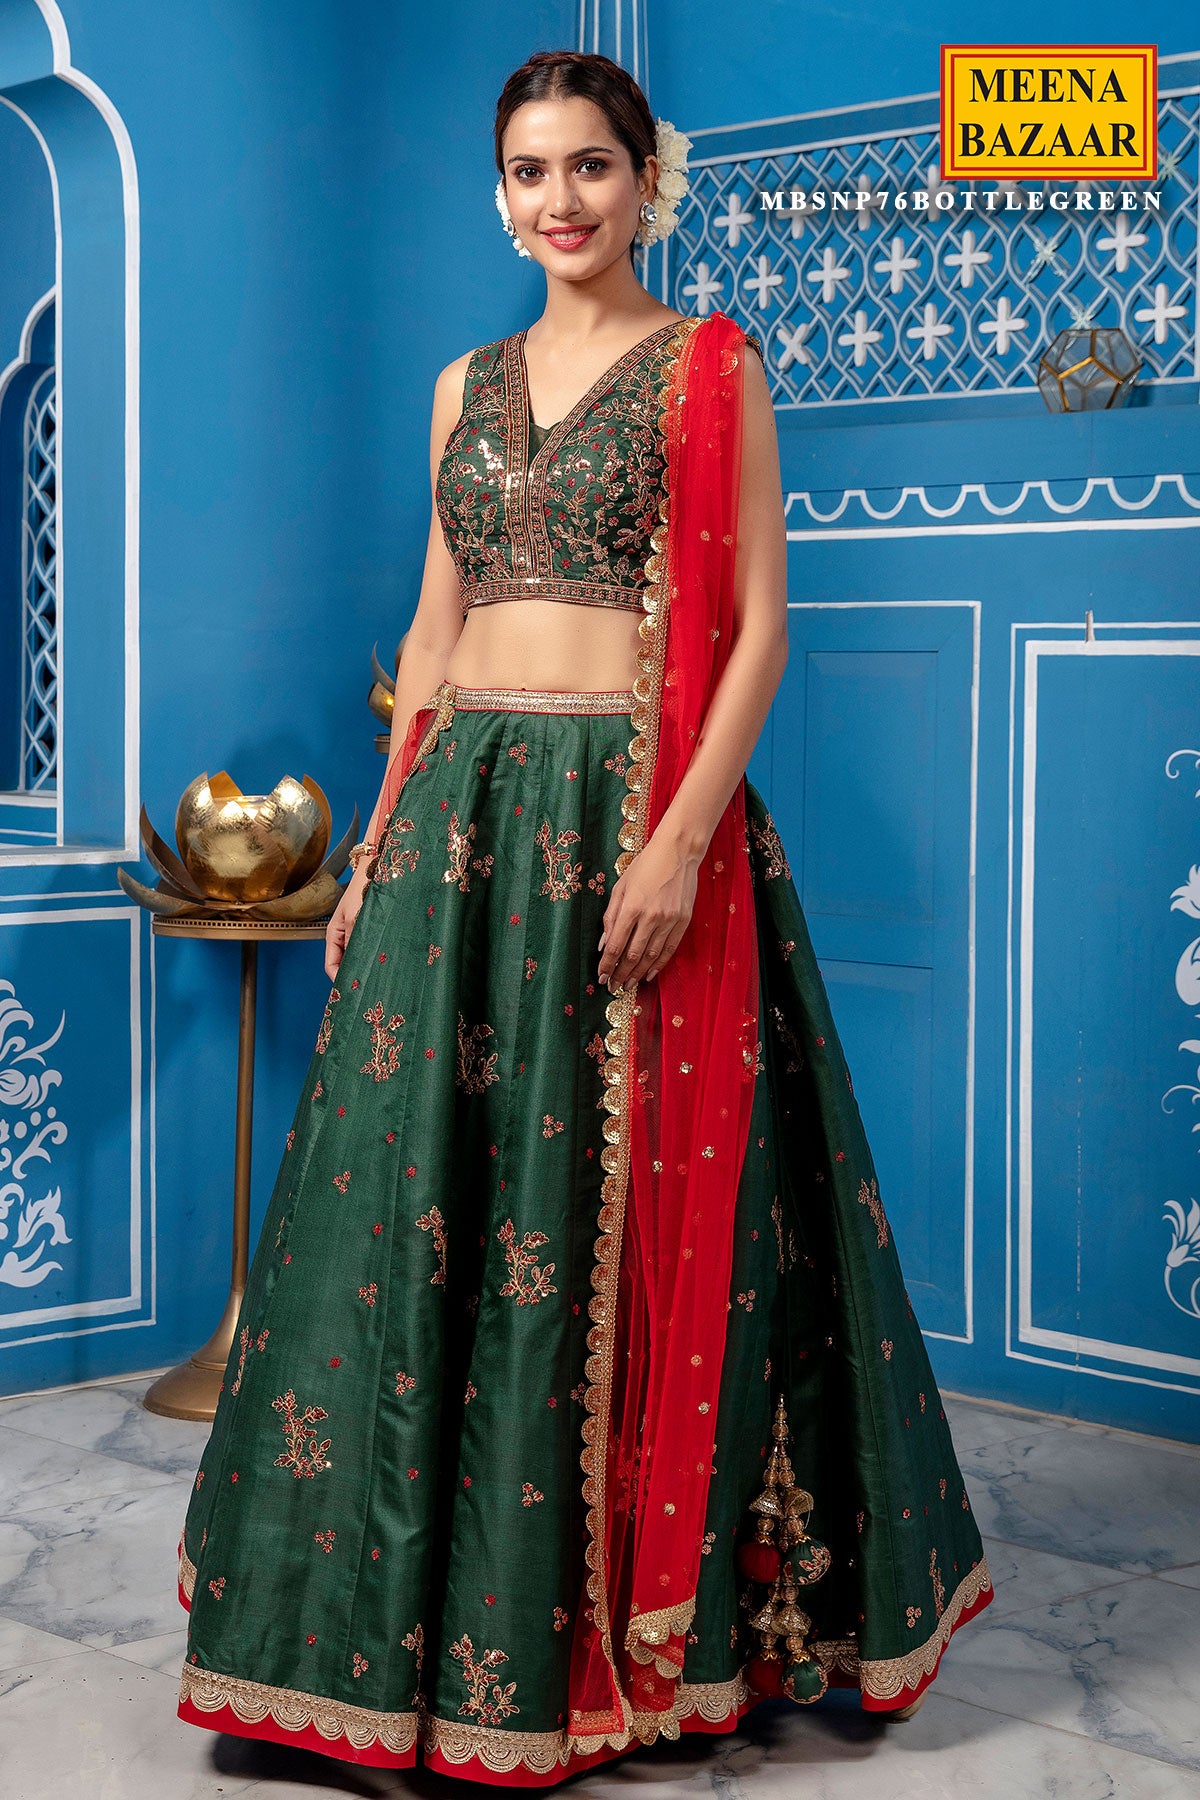 Saree In Meena Bazaar - Designer Sarees Rs 500 to 1000 - SareesWala.com